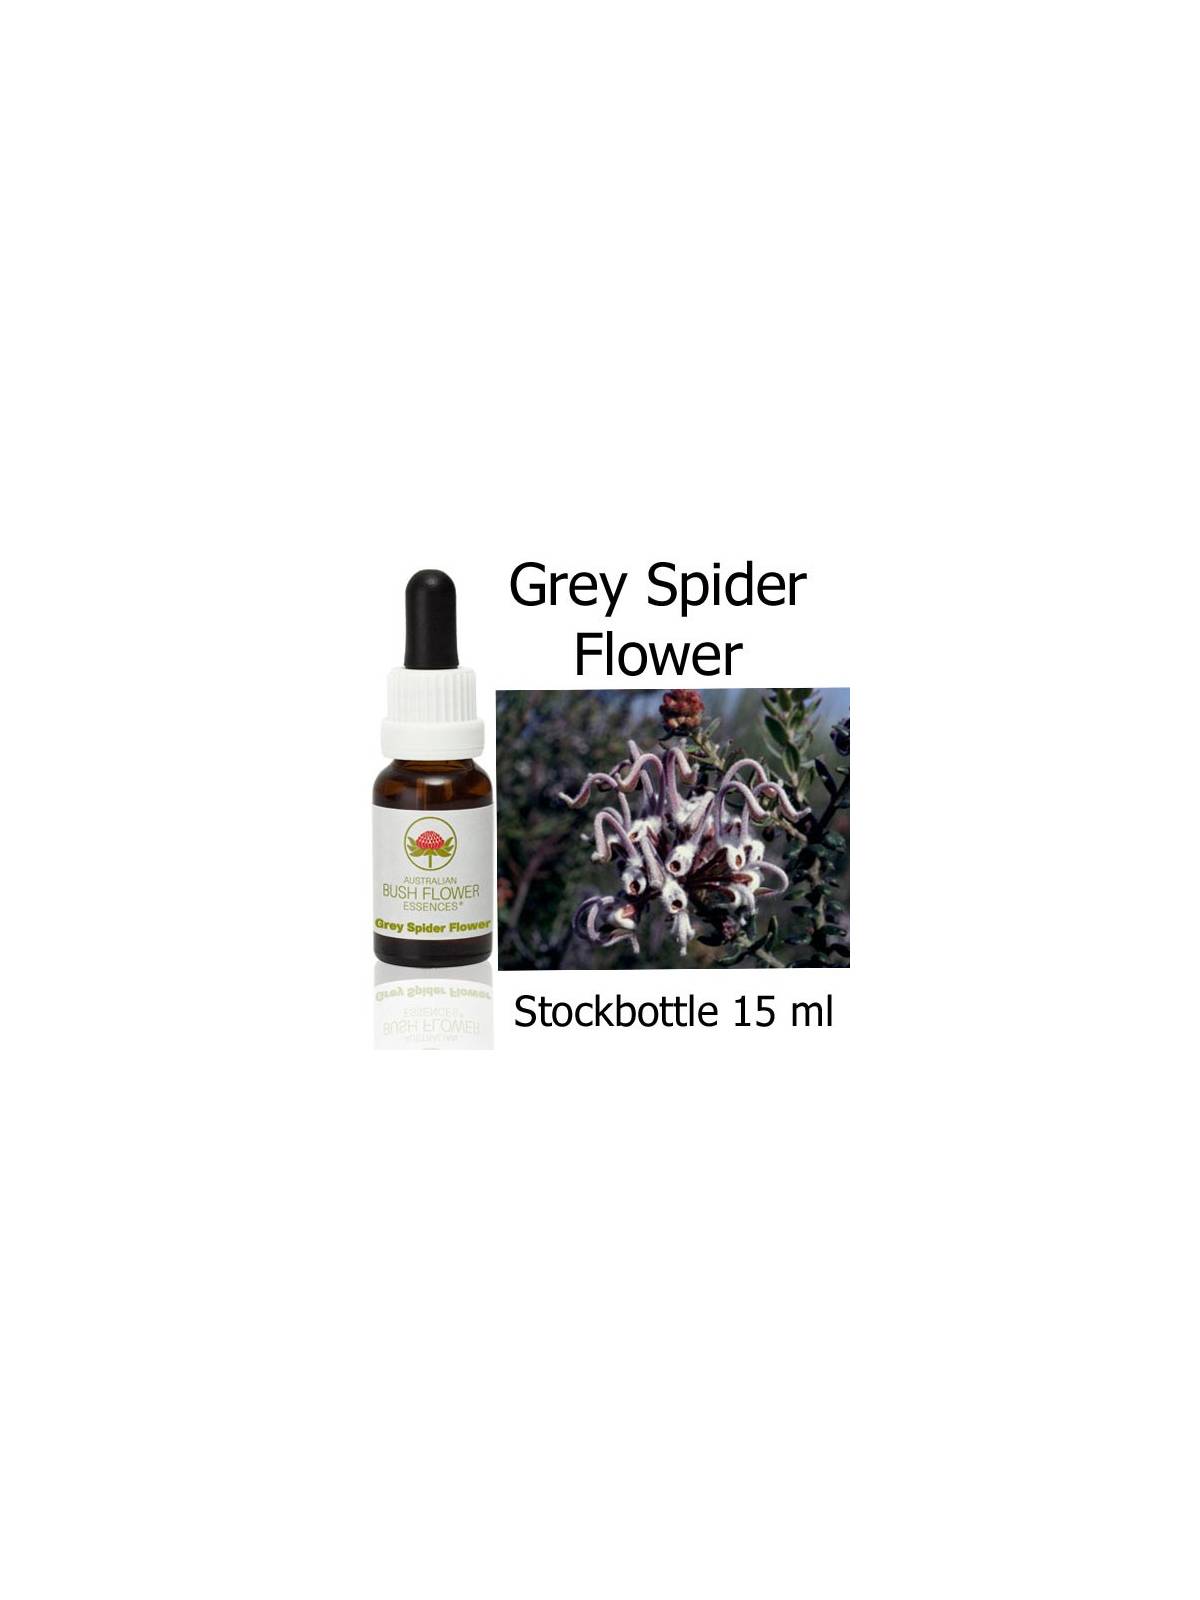 Grey Spider Flower Australian Bush Flower Essences Stockbottles